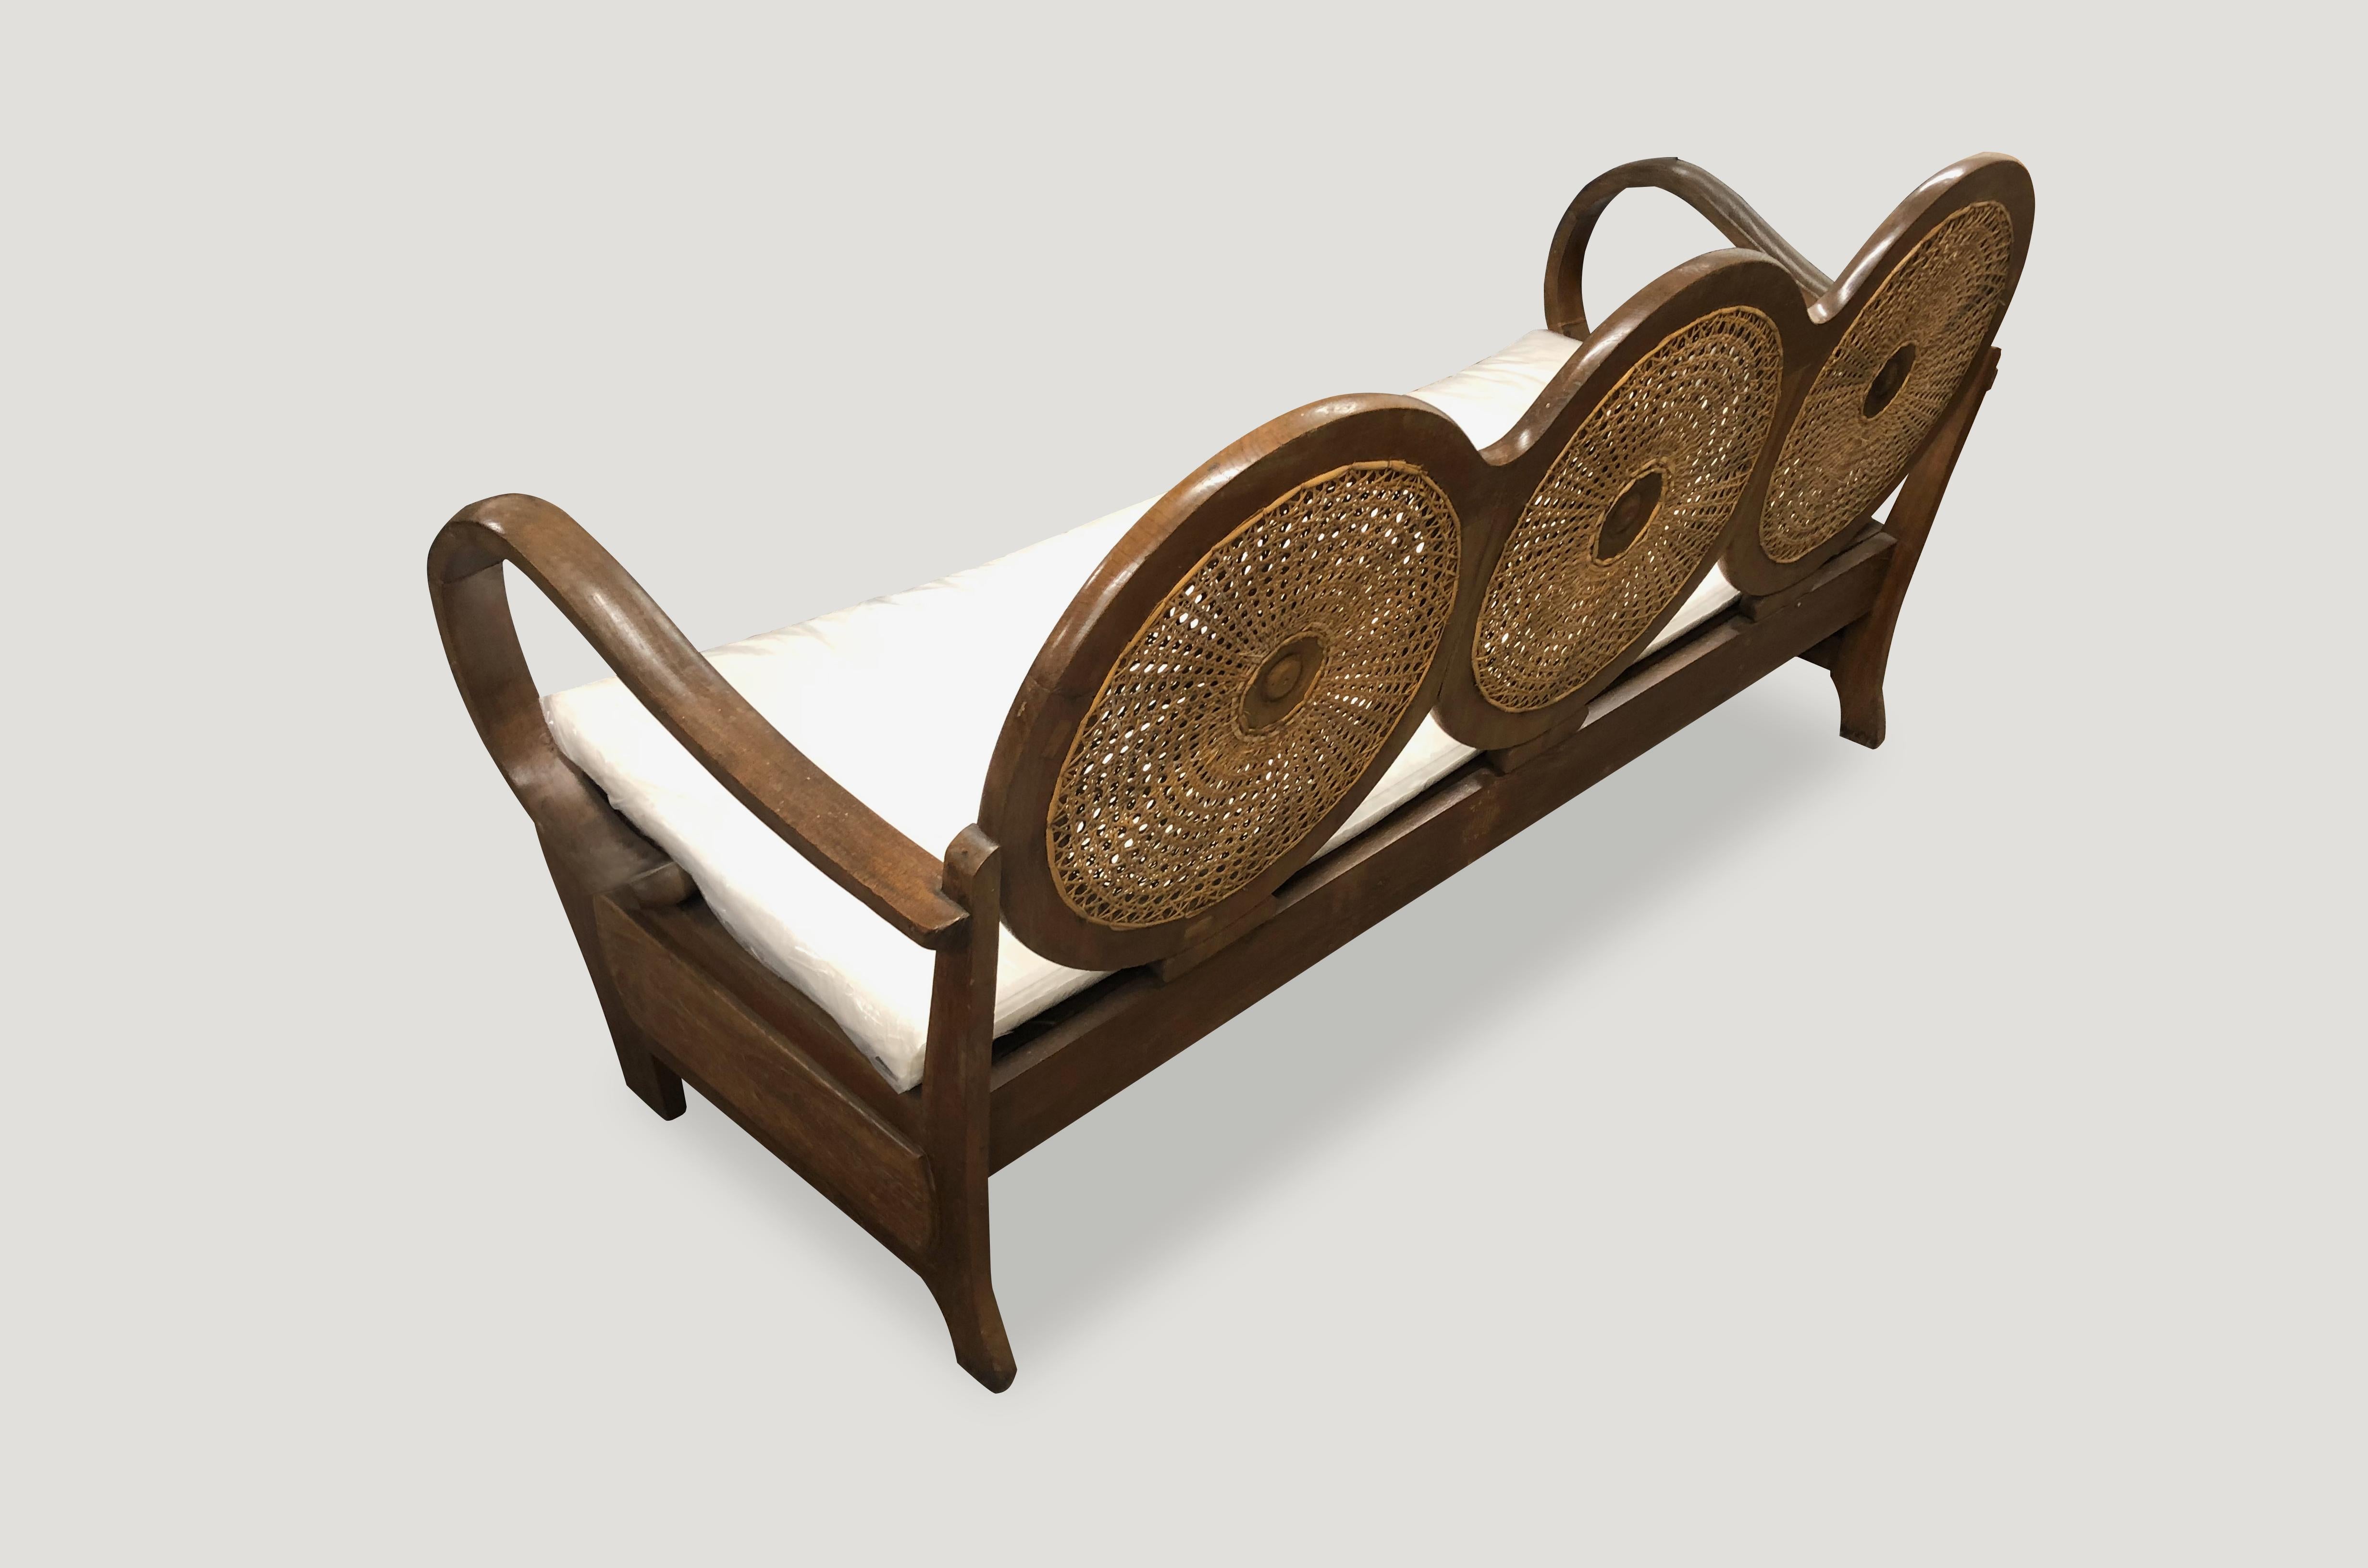 Sofa aus Teakholz mit handgeflochtenem Rattan aus der Mitte des Jahrhunderts. Atemberaubende kreisförmige Rückenlehne und abgerundete Armlehnen, handgeschnitzt aus einem einzigen Stück Teakholz mit schöner Patina. Das Sofa wird mit einem weißen